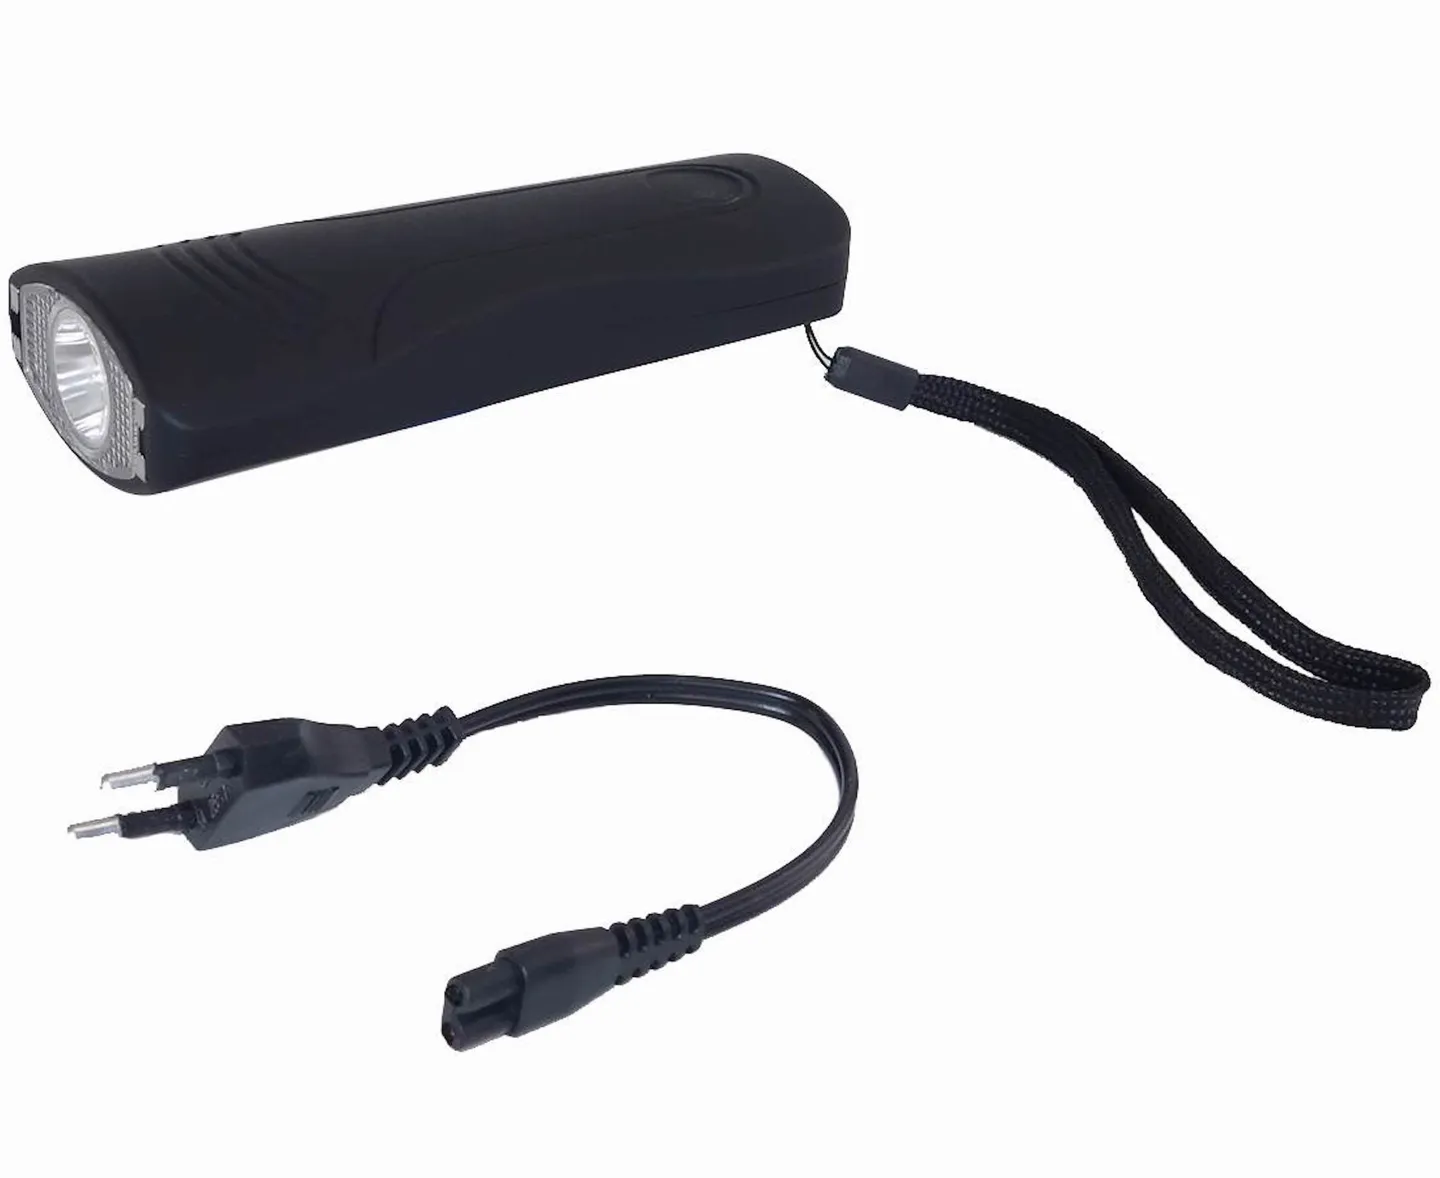 Shocker & Taser - La Lampe Shocker Flash: polyvalent et agréable avec une très bonne  prise en main